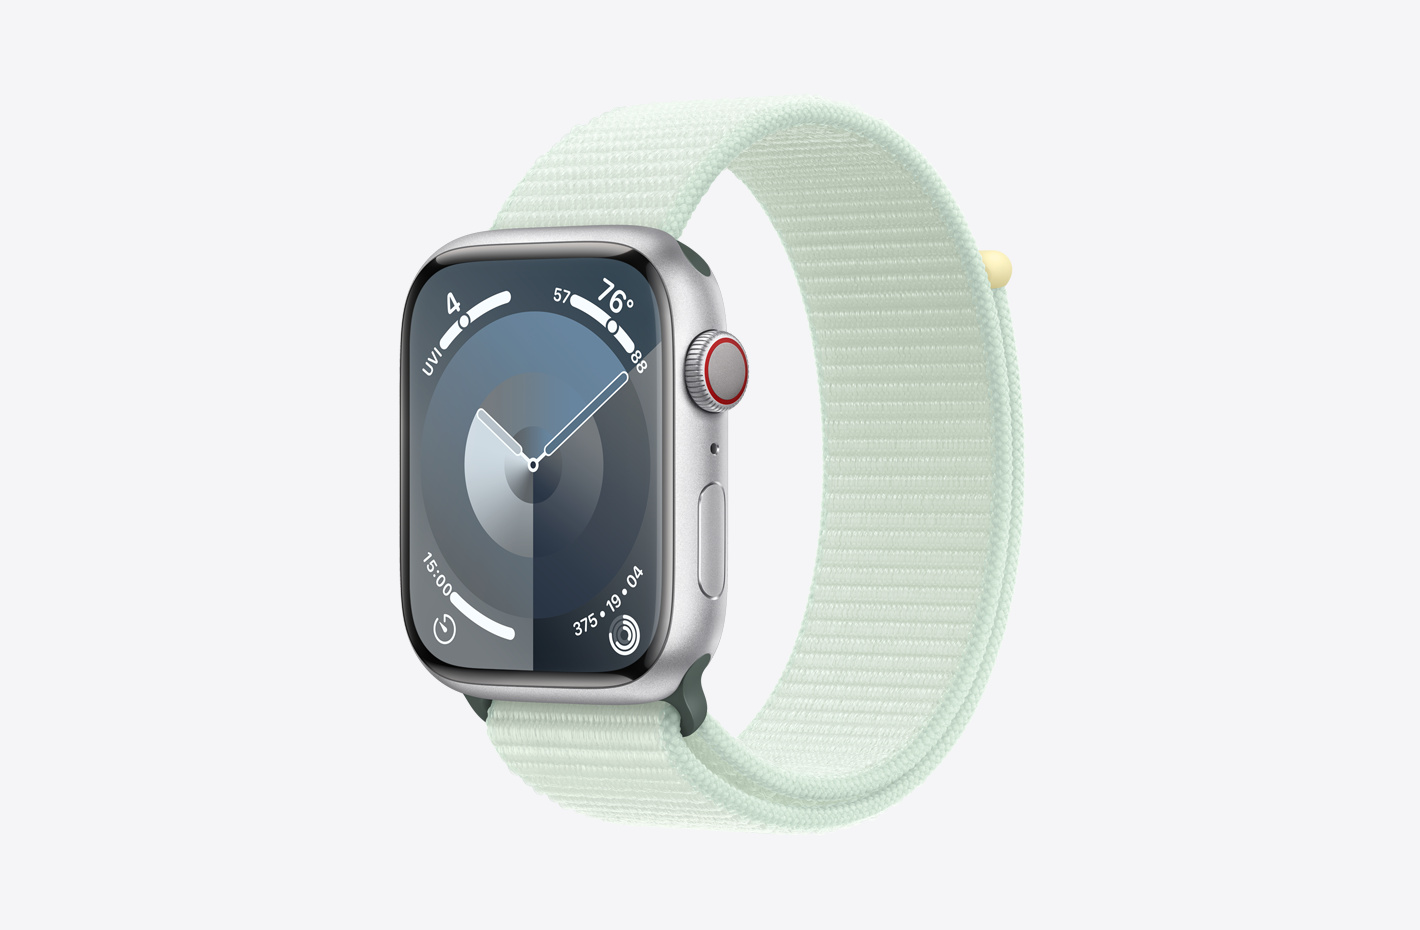 Apple Watch mit Aluminiumgehäuse Silber mit mattem Finish und Schrägansicht des Sport Loop Blassmint (Grün), mit Klettverschluss und doppel­lagigem Nylon-Maschen­gewebe